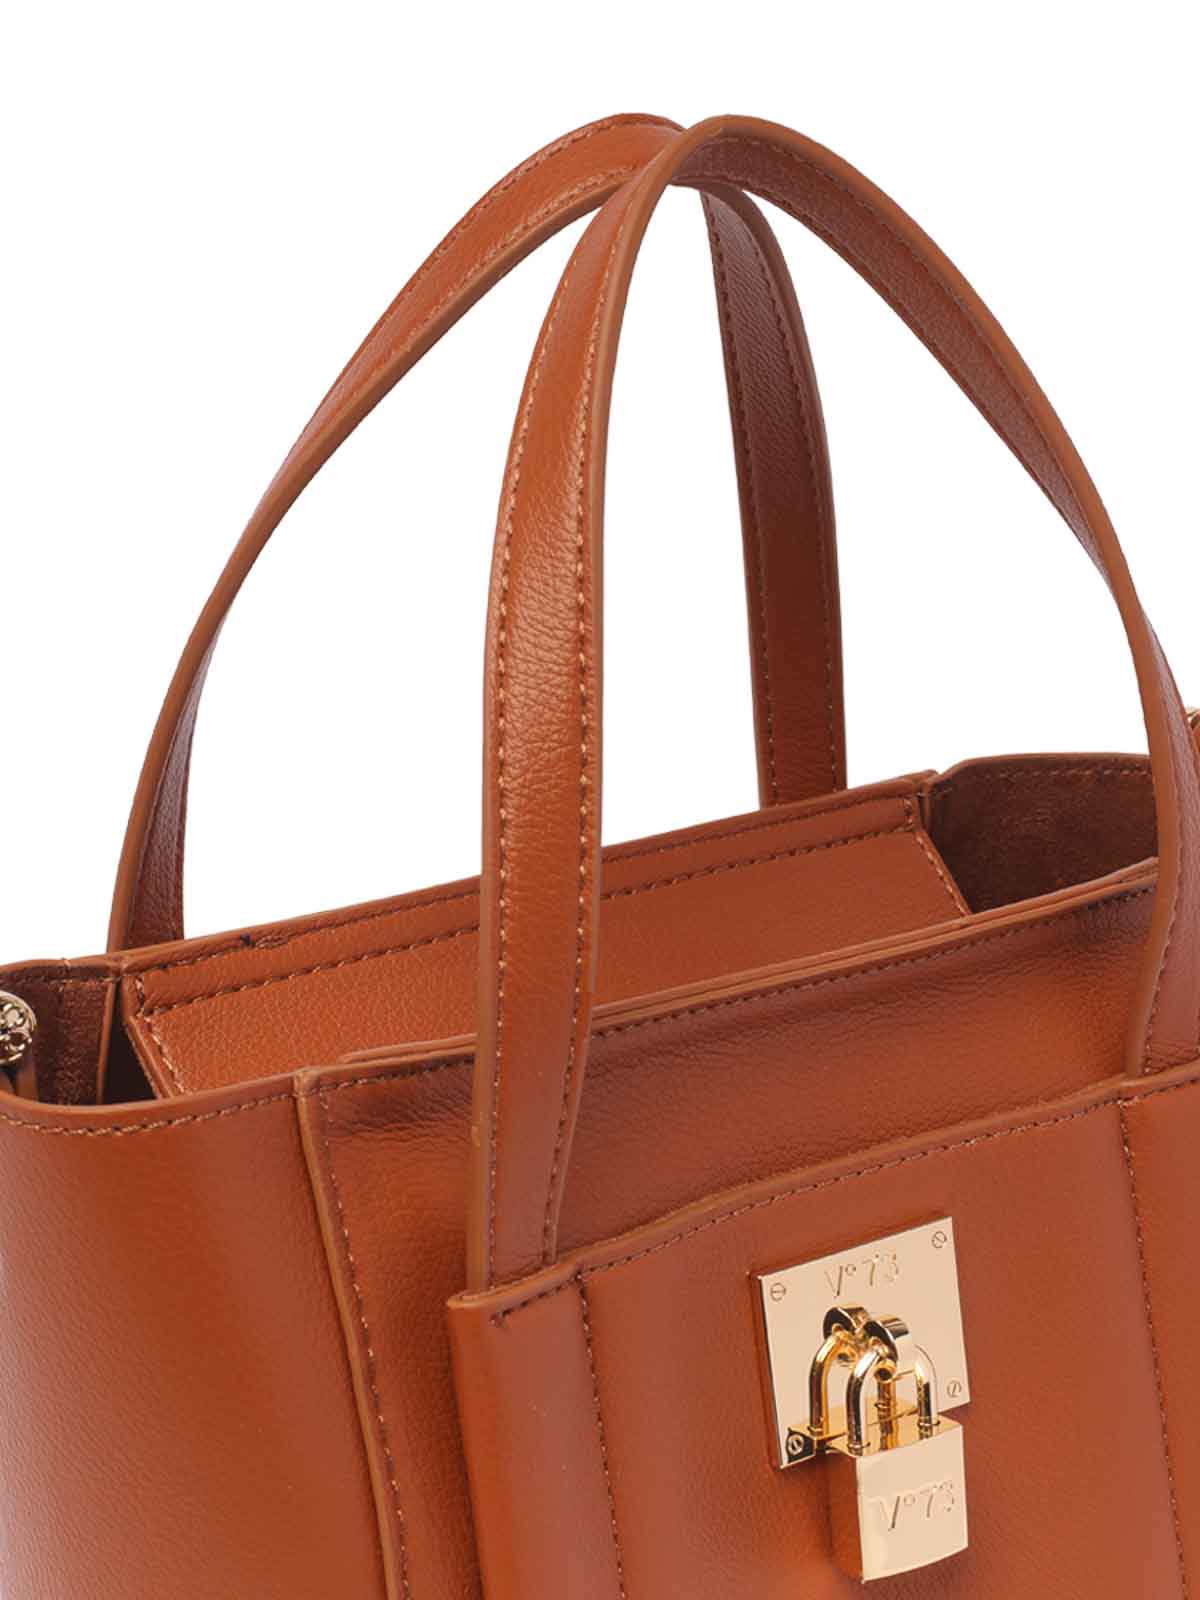 Shop V73 Titania Handbag In Brown